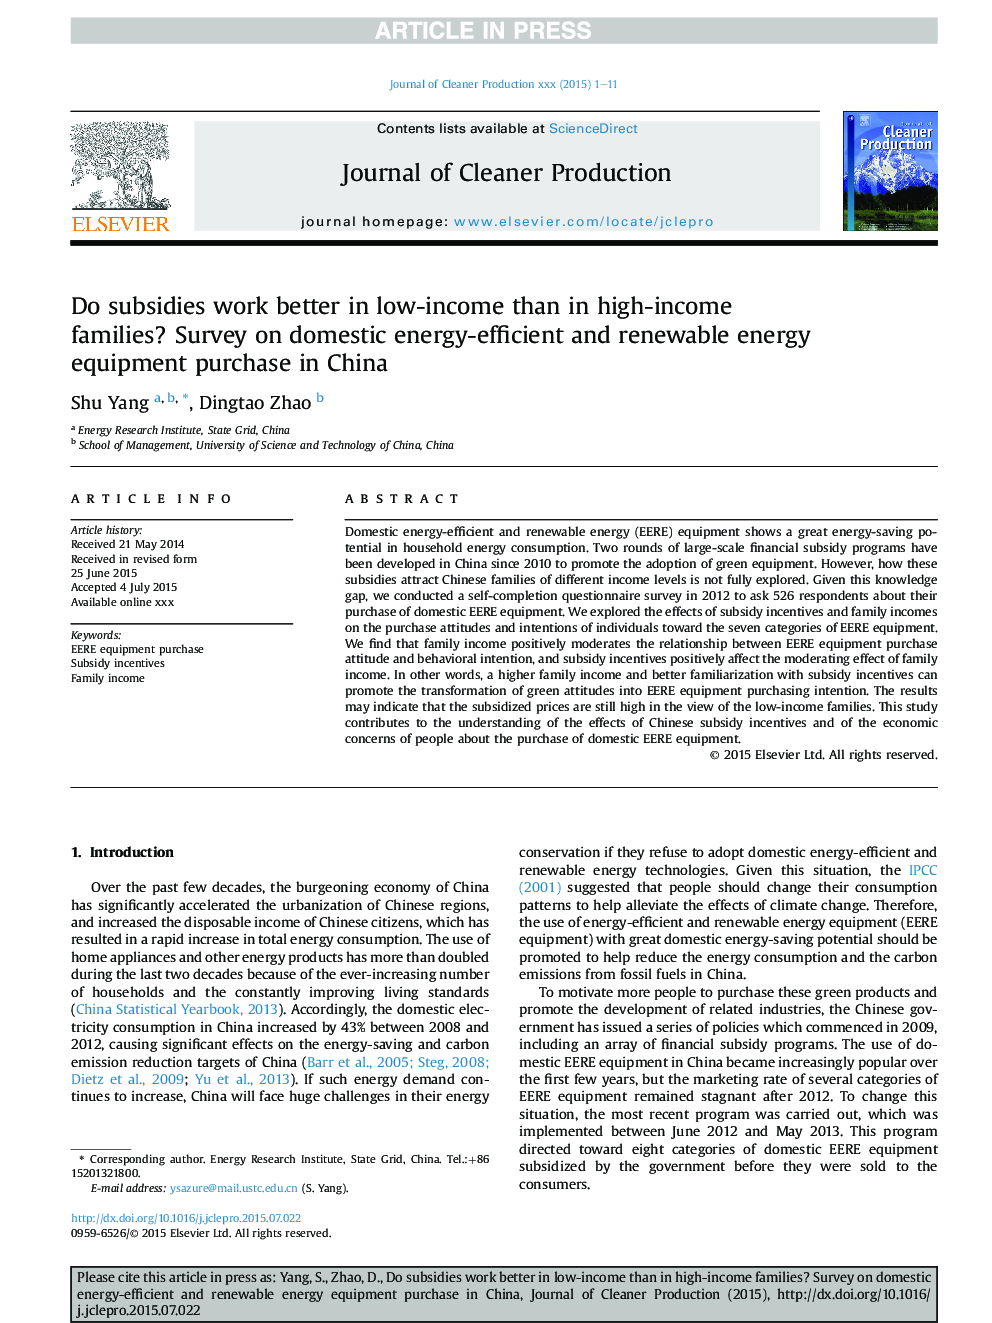 آیا یارانه ها در افراد کم درآمد بهتر از خانواده های با درآمد بالا کار می کنند؟ بررسی مصرف انرژی داخلی و انرژی تجدیدپذیر در چین 